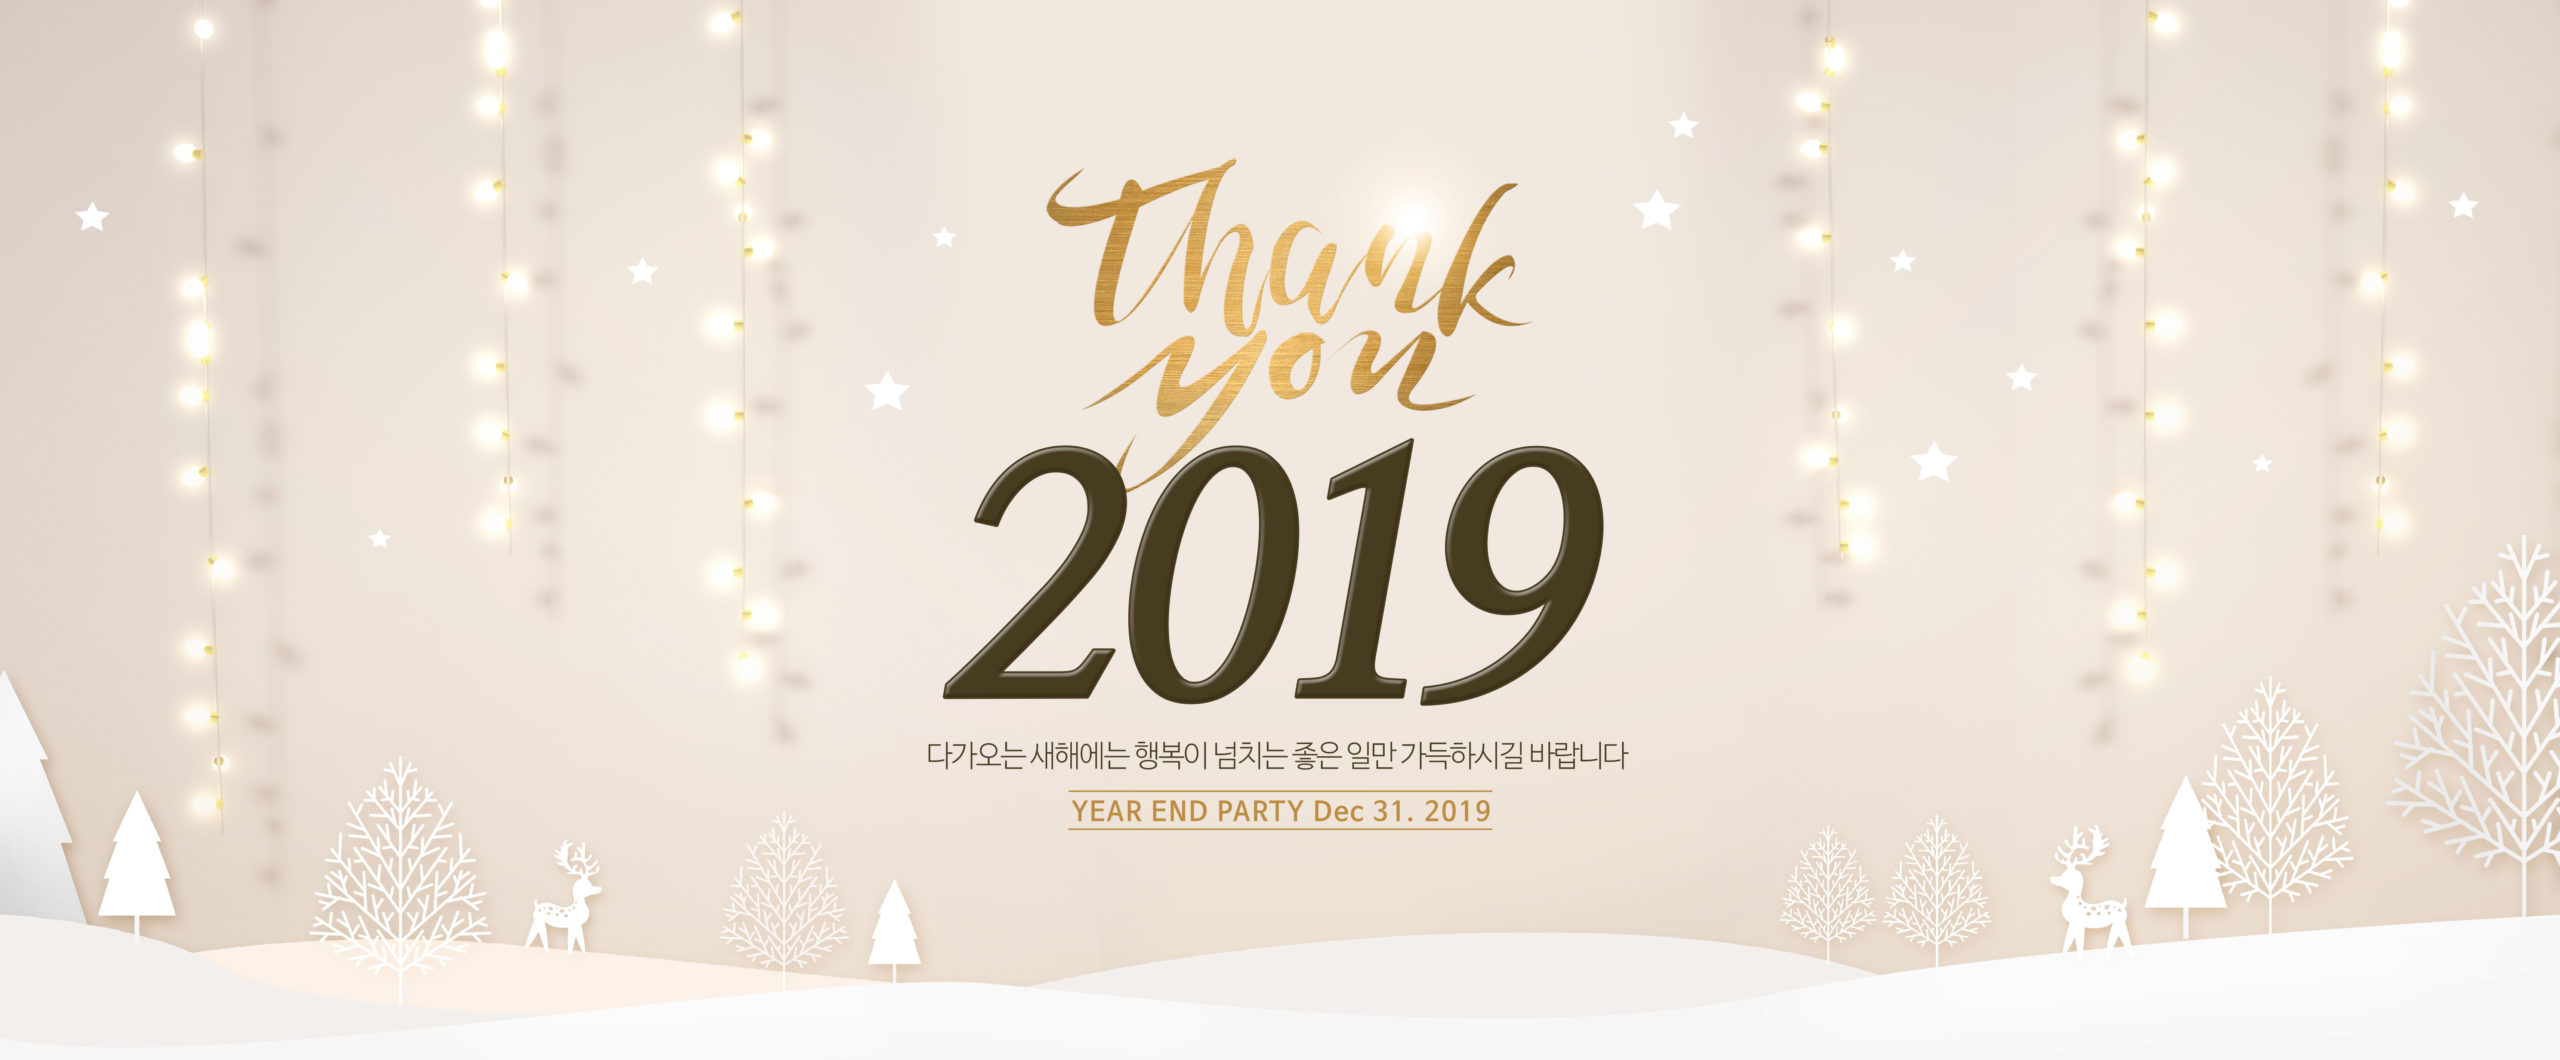 2019跨年派对庆祝活动宣传Banner设计模板插图